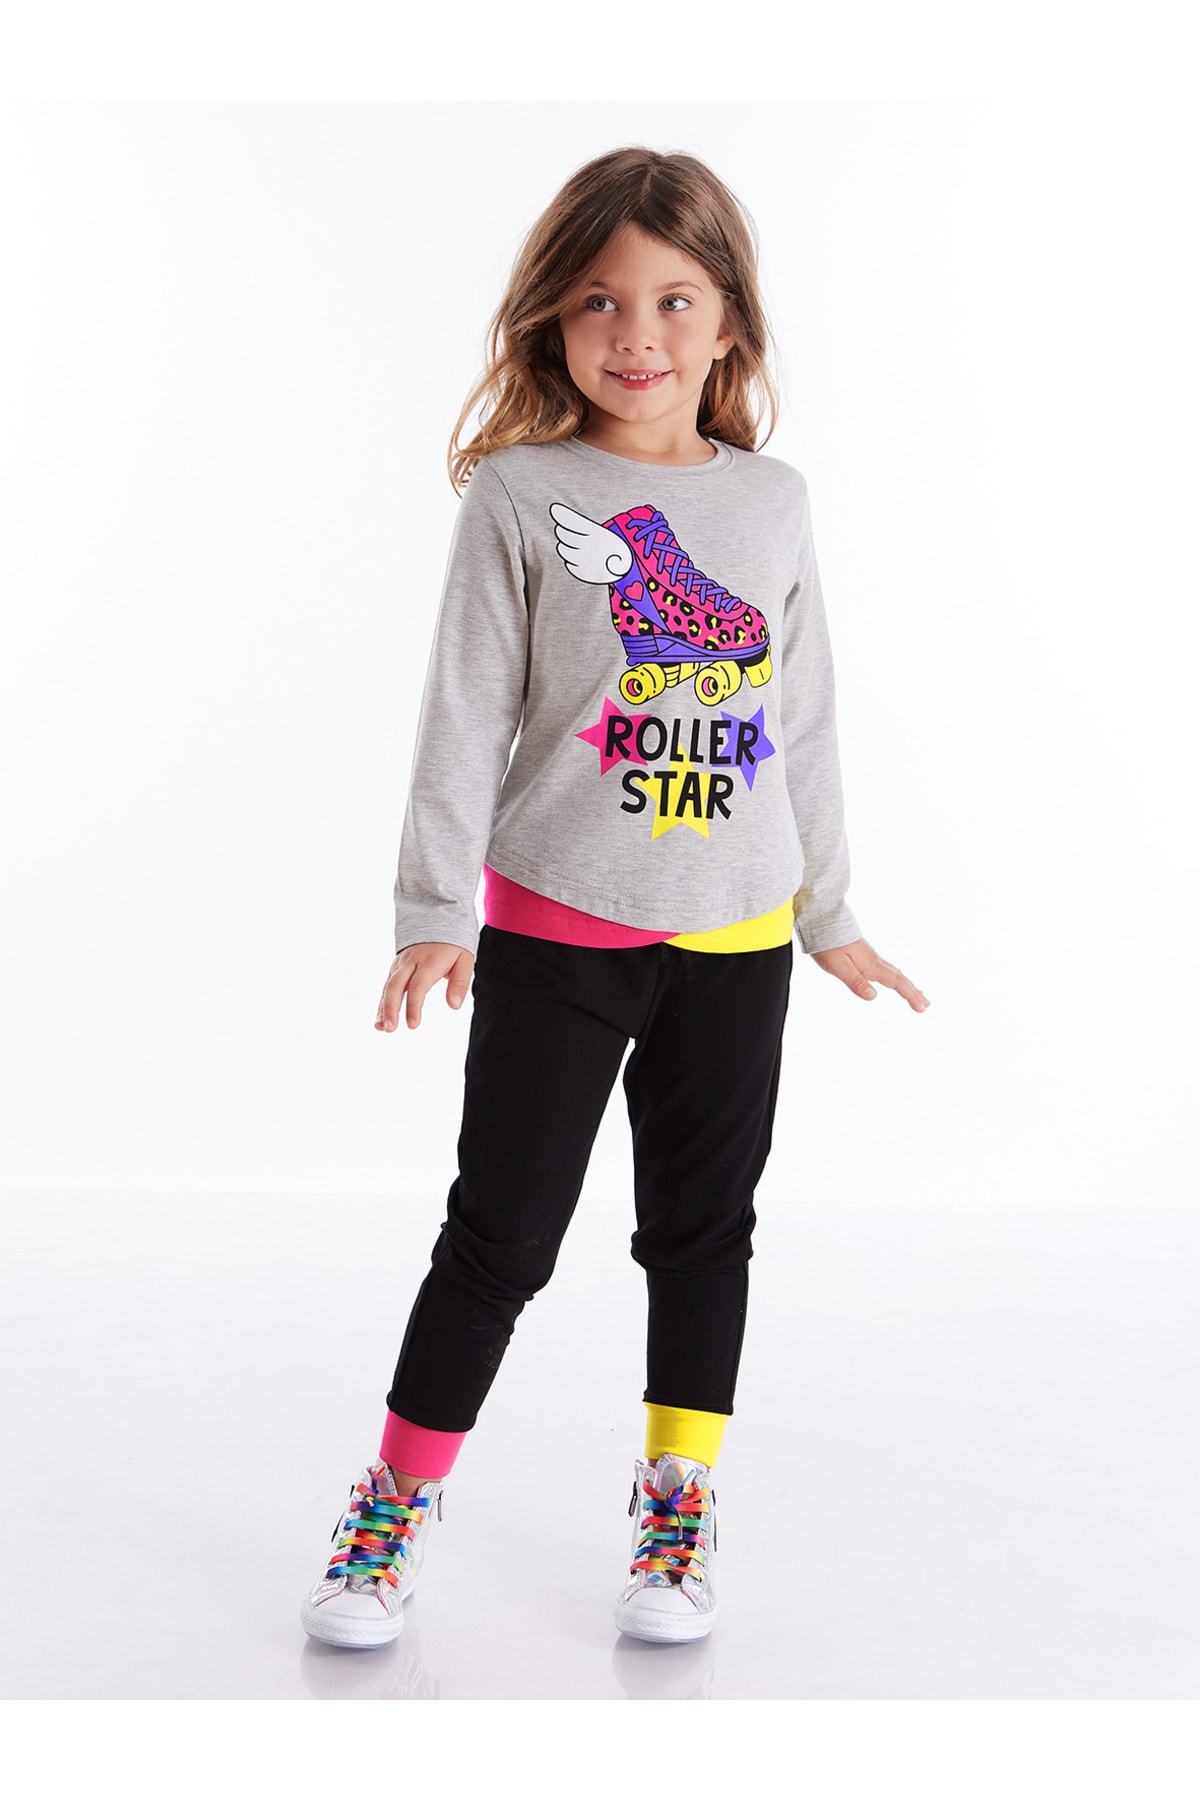 Mushi Roller Star Roller Skates Girls' Gray T-shirt and Black Leggings Set.